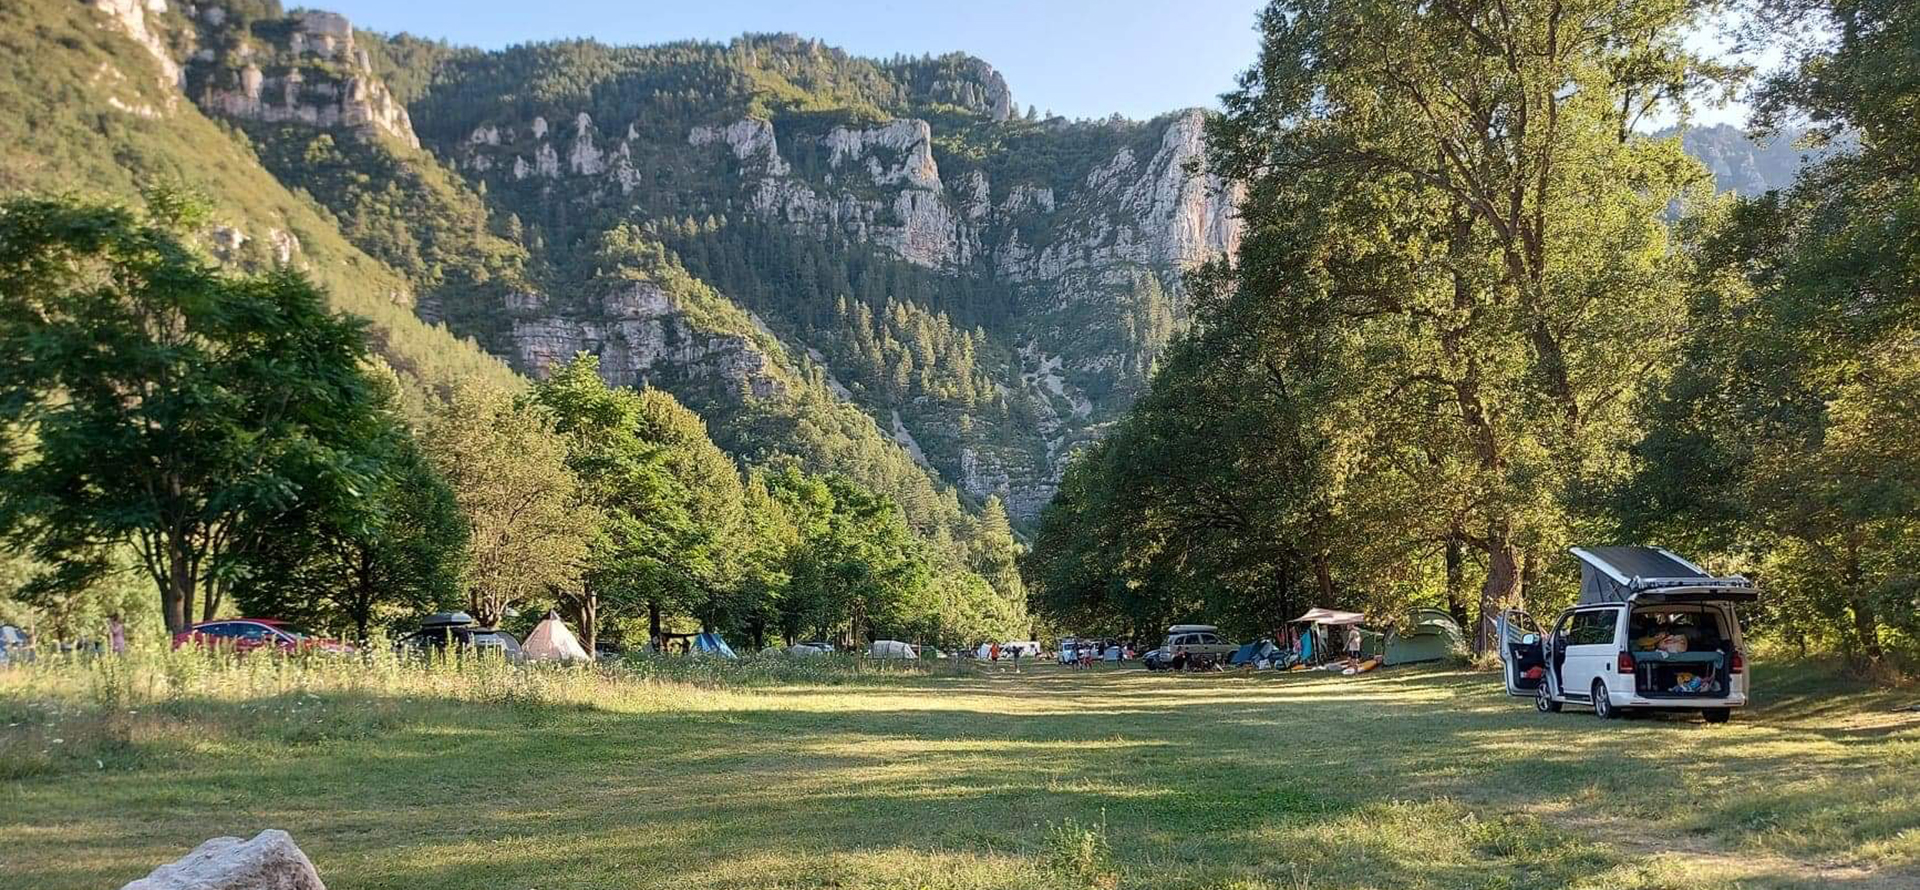 Aire naturelle de camping de Charbonnières : location vacances Gorges du Tarn